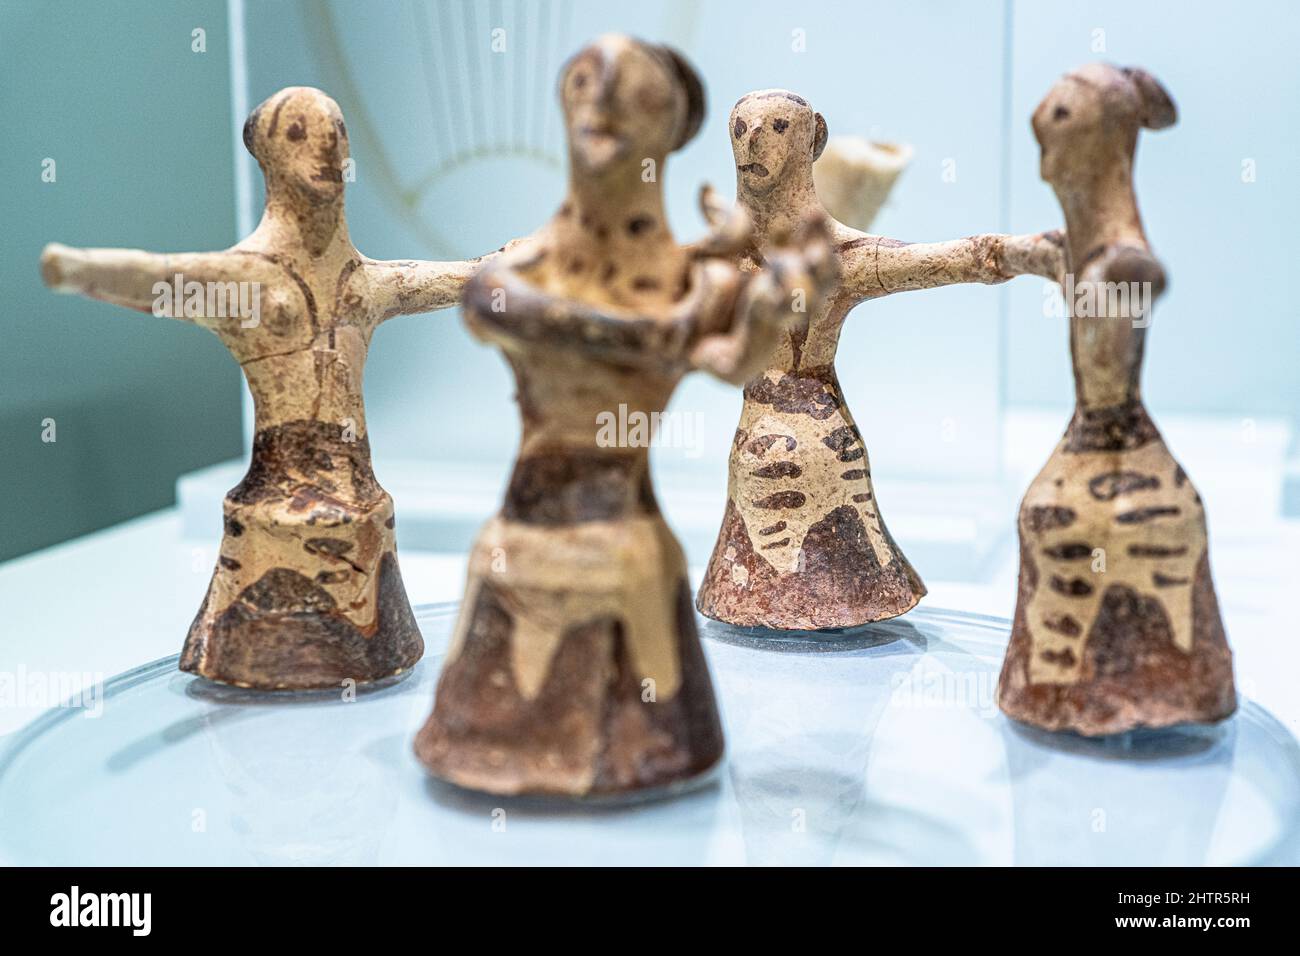 Statuette figurines de la civilisation minoenne, Musée archéologique d'Héraklion, île de Crète, Grèce Banque D'Images